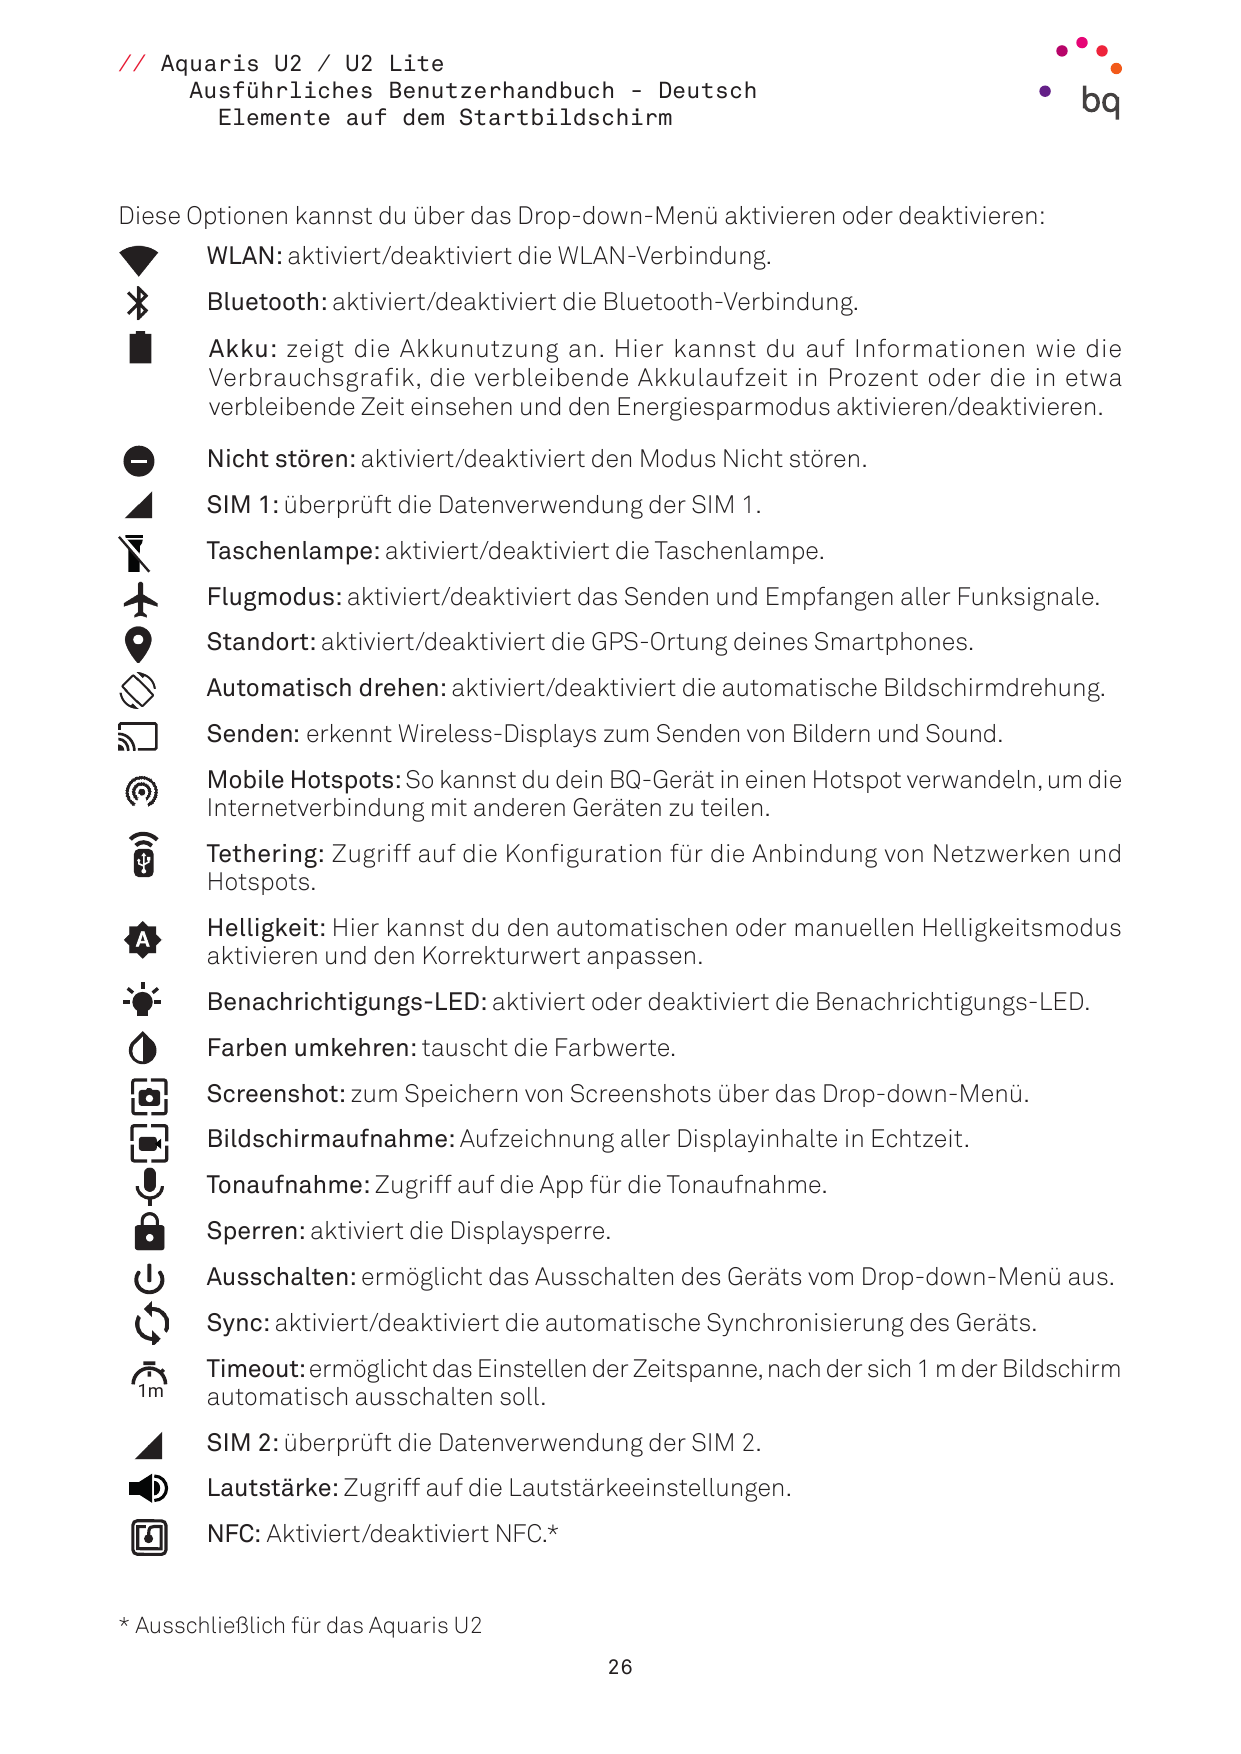 // Aquaris U2 / U2 LiteAusführliches Benutzerhandbuch - DeutschElemente auf dem StartbildschirmDiese Optionen kannst du über das